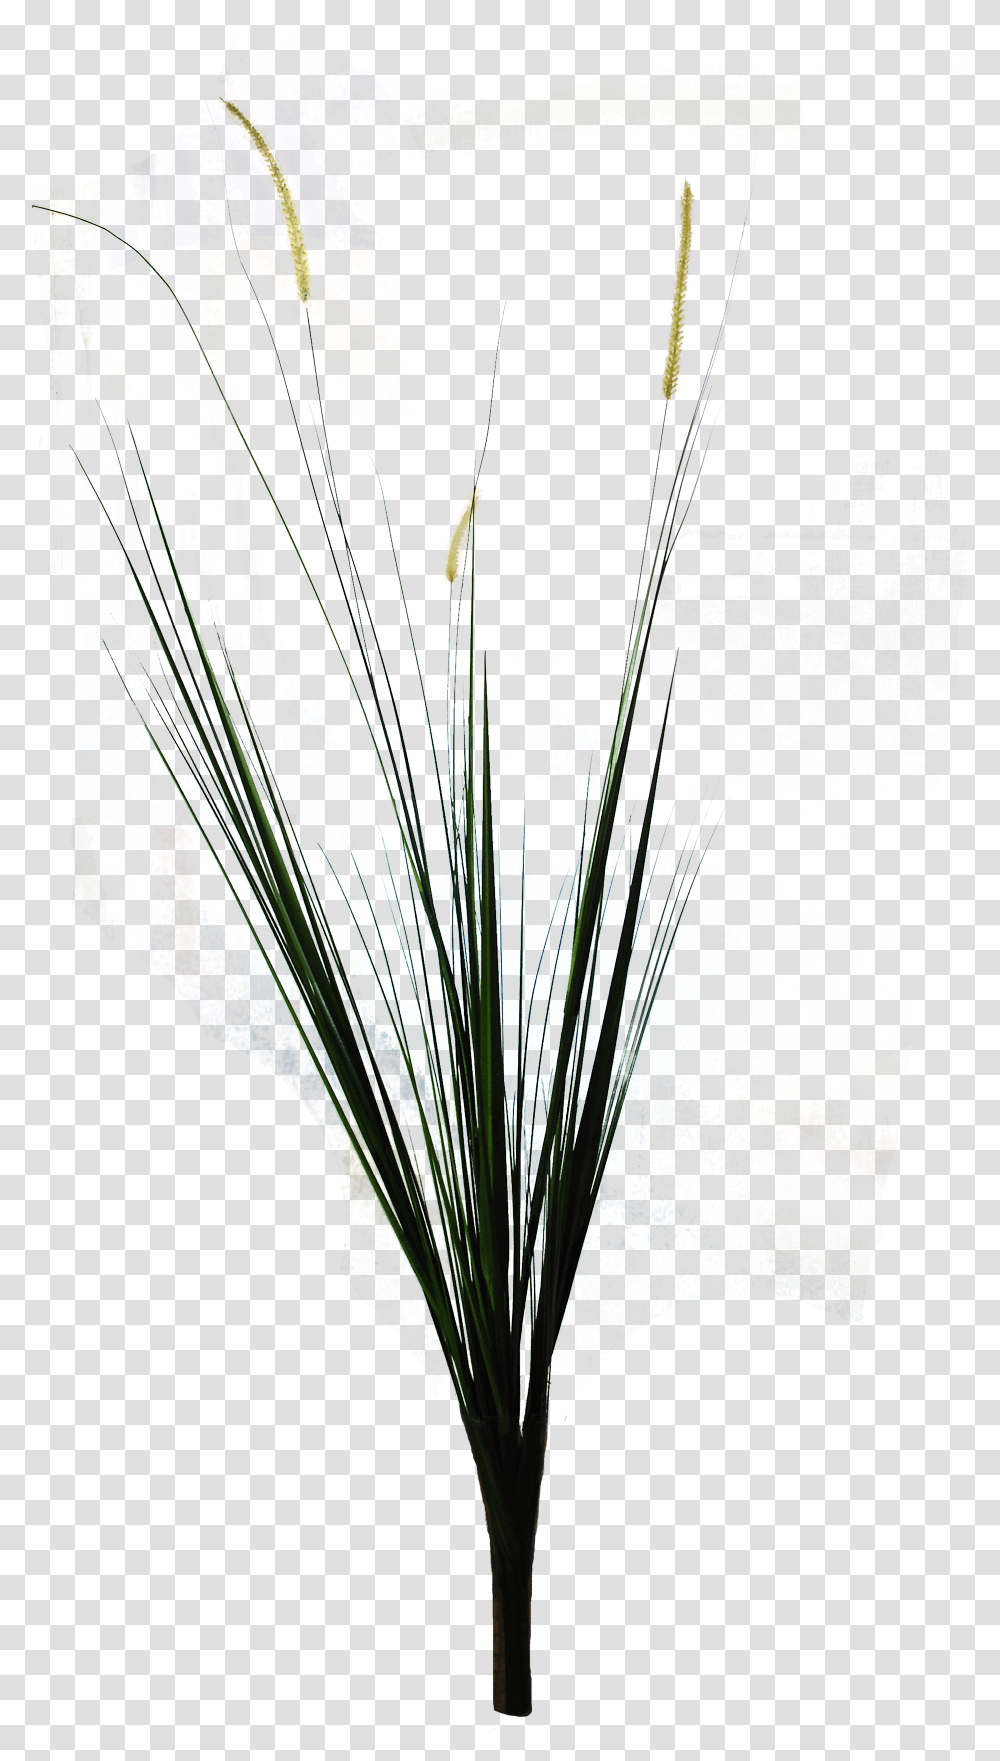 Ornamental Grass Grass, Plant, Glass, Lighting, Flower Arrangement Transparent Png